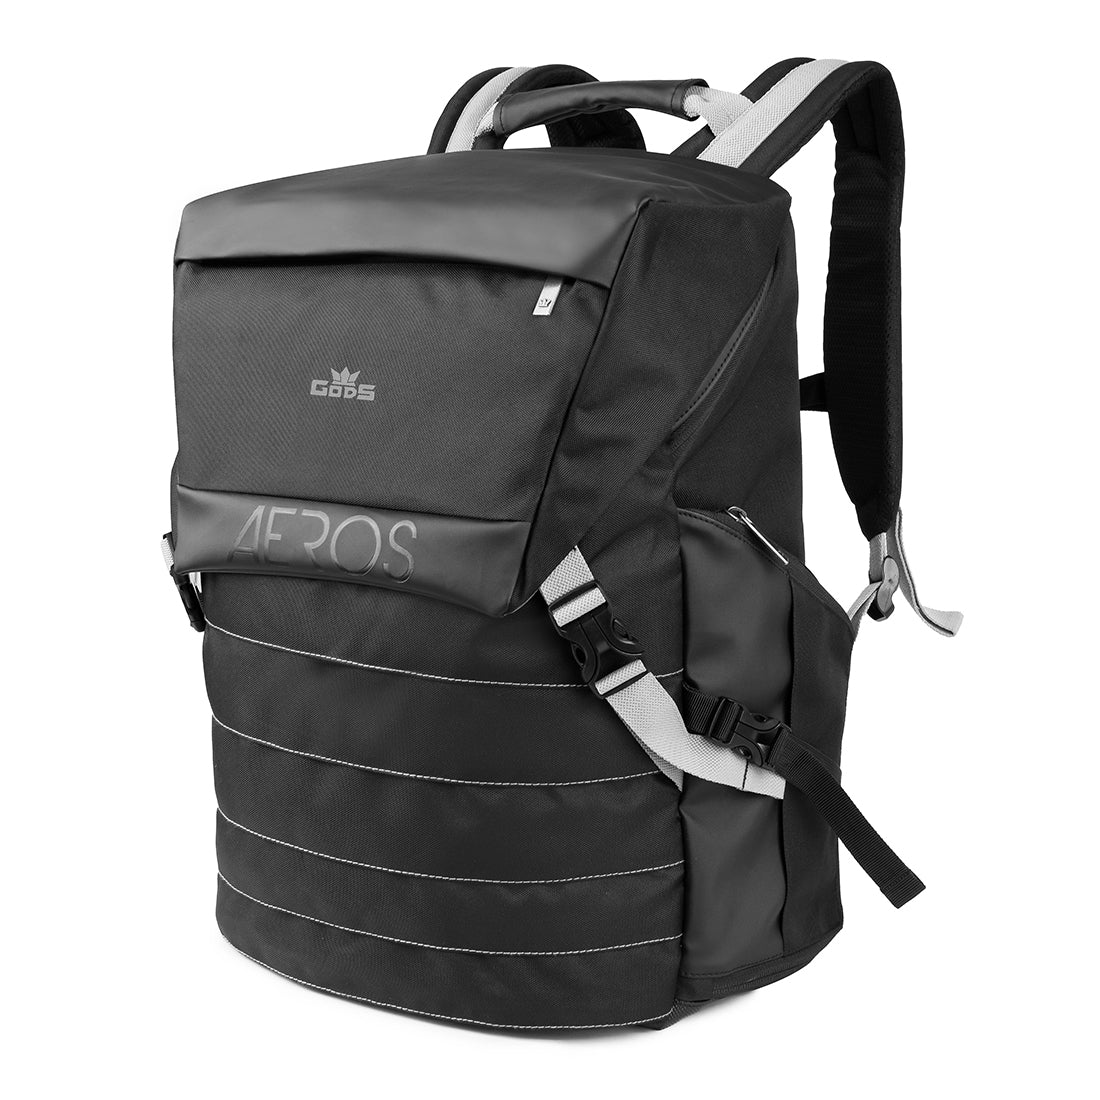 Aeros 35 Backpack